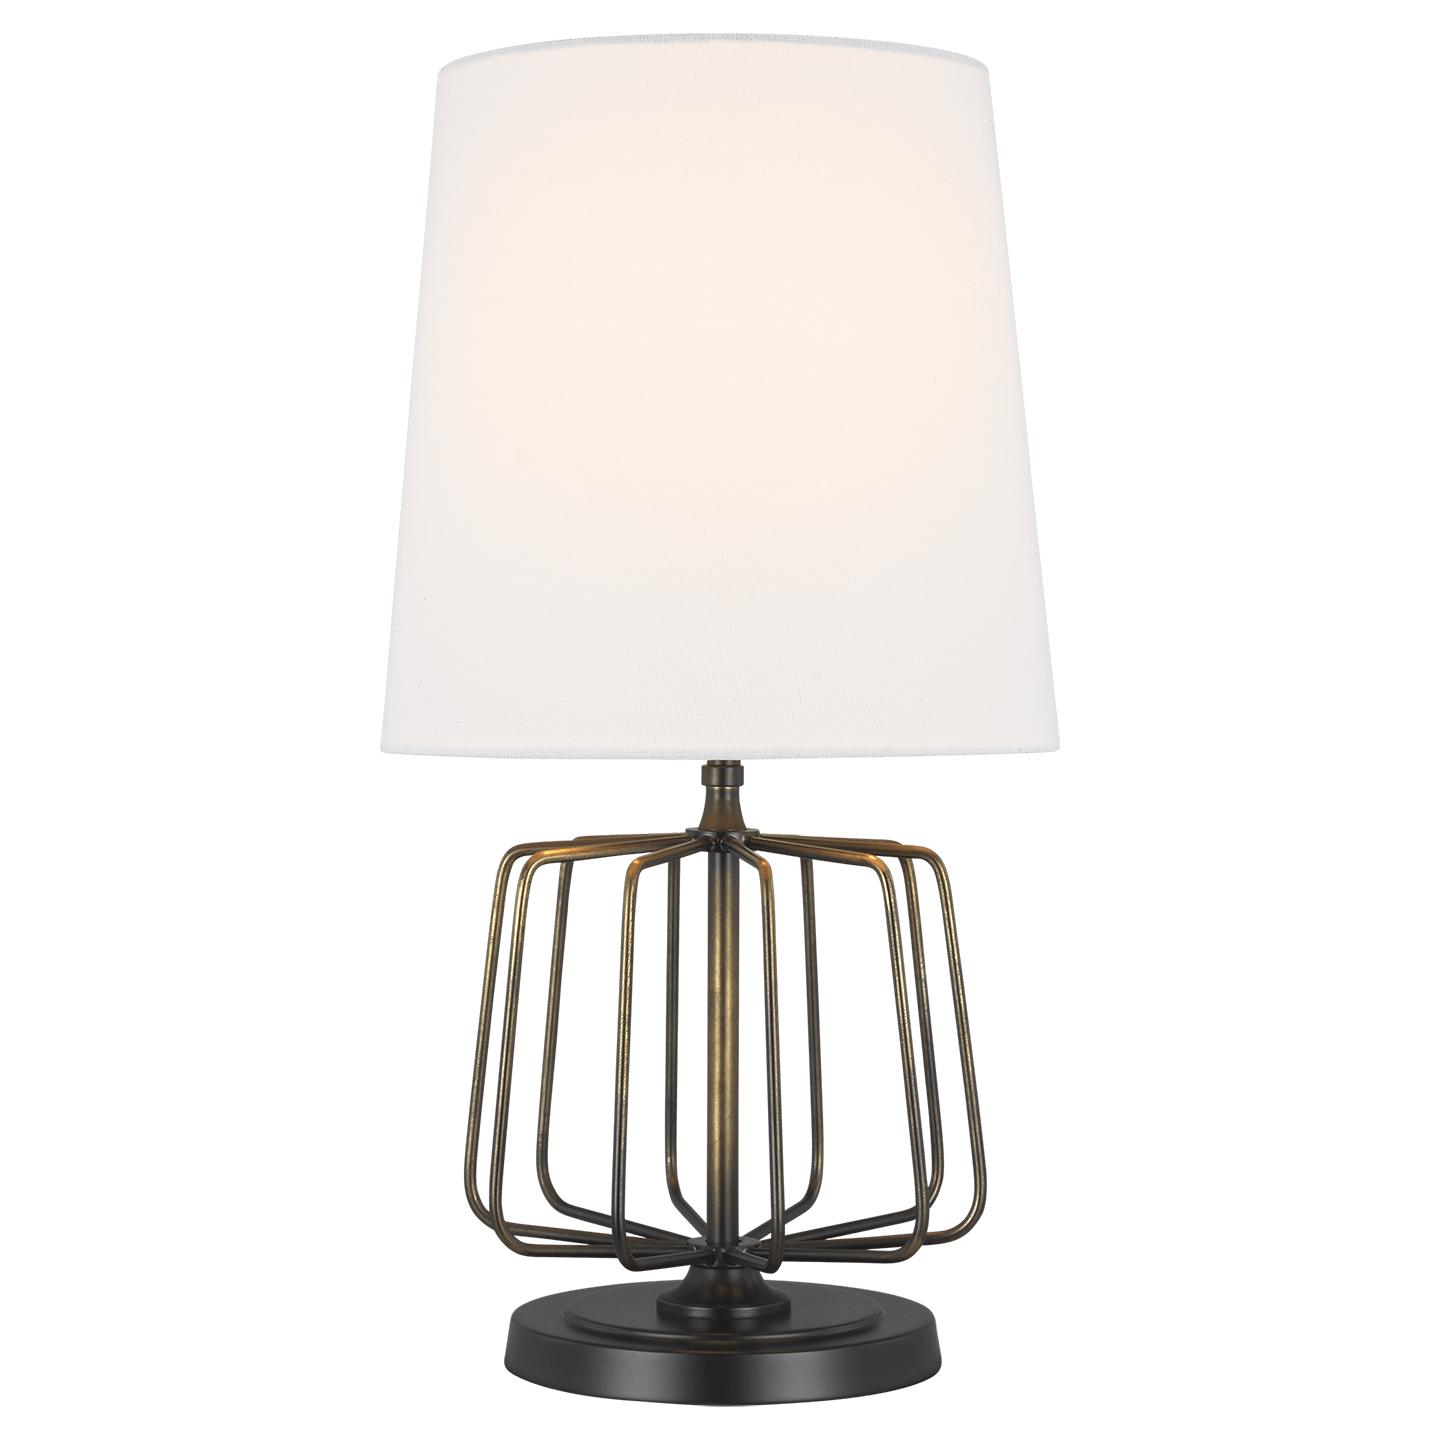 Купить Настольная лампа Milo Mini Table Lamp в интернет-магазине roooms.ru